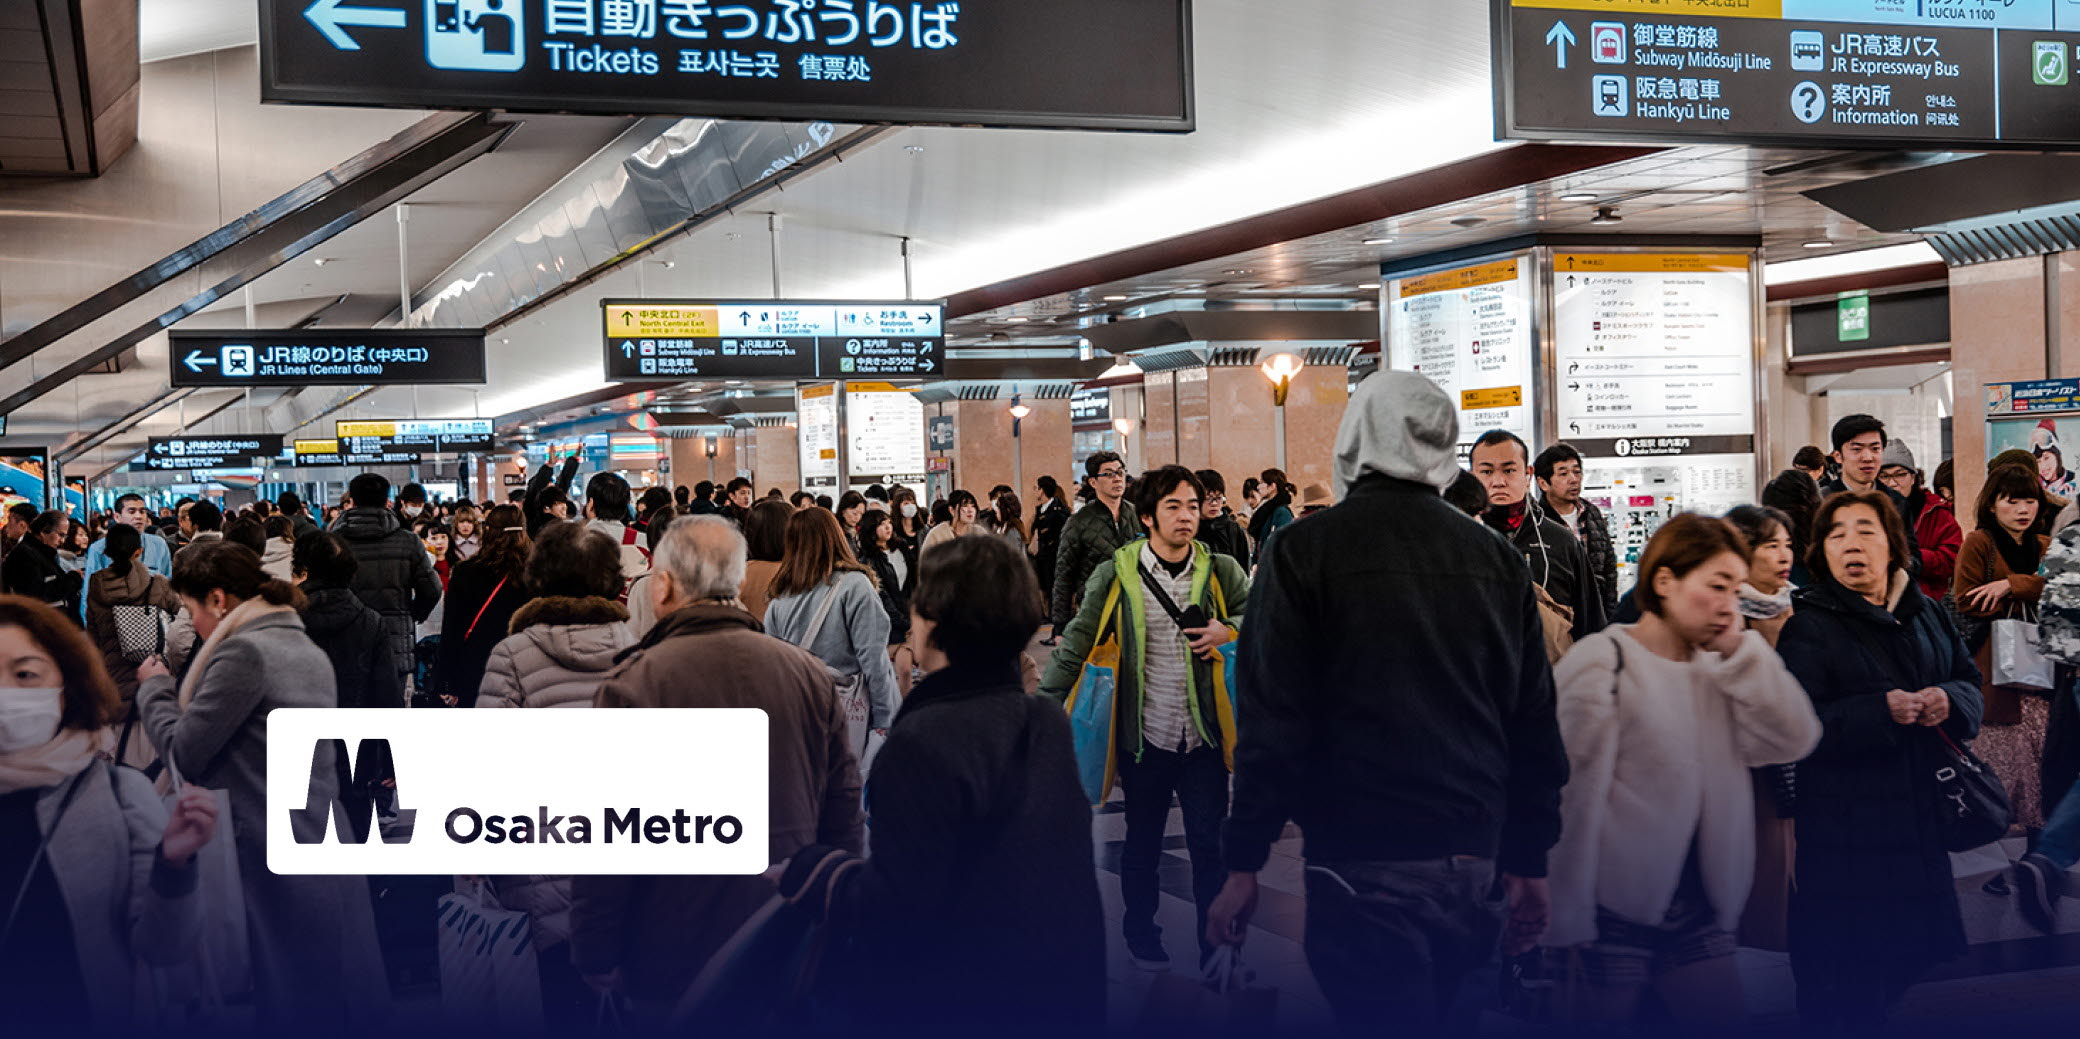 Osaka metro station